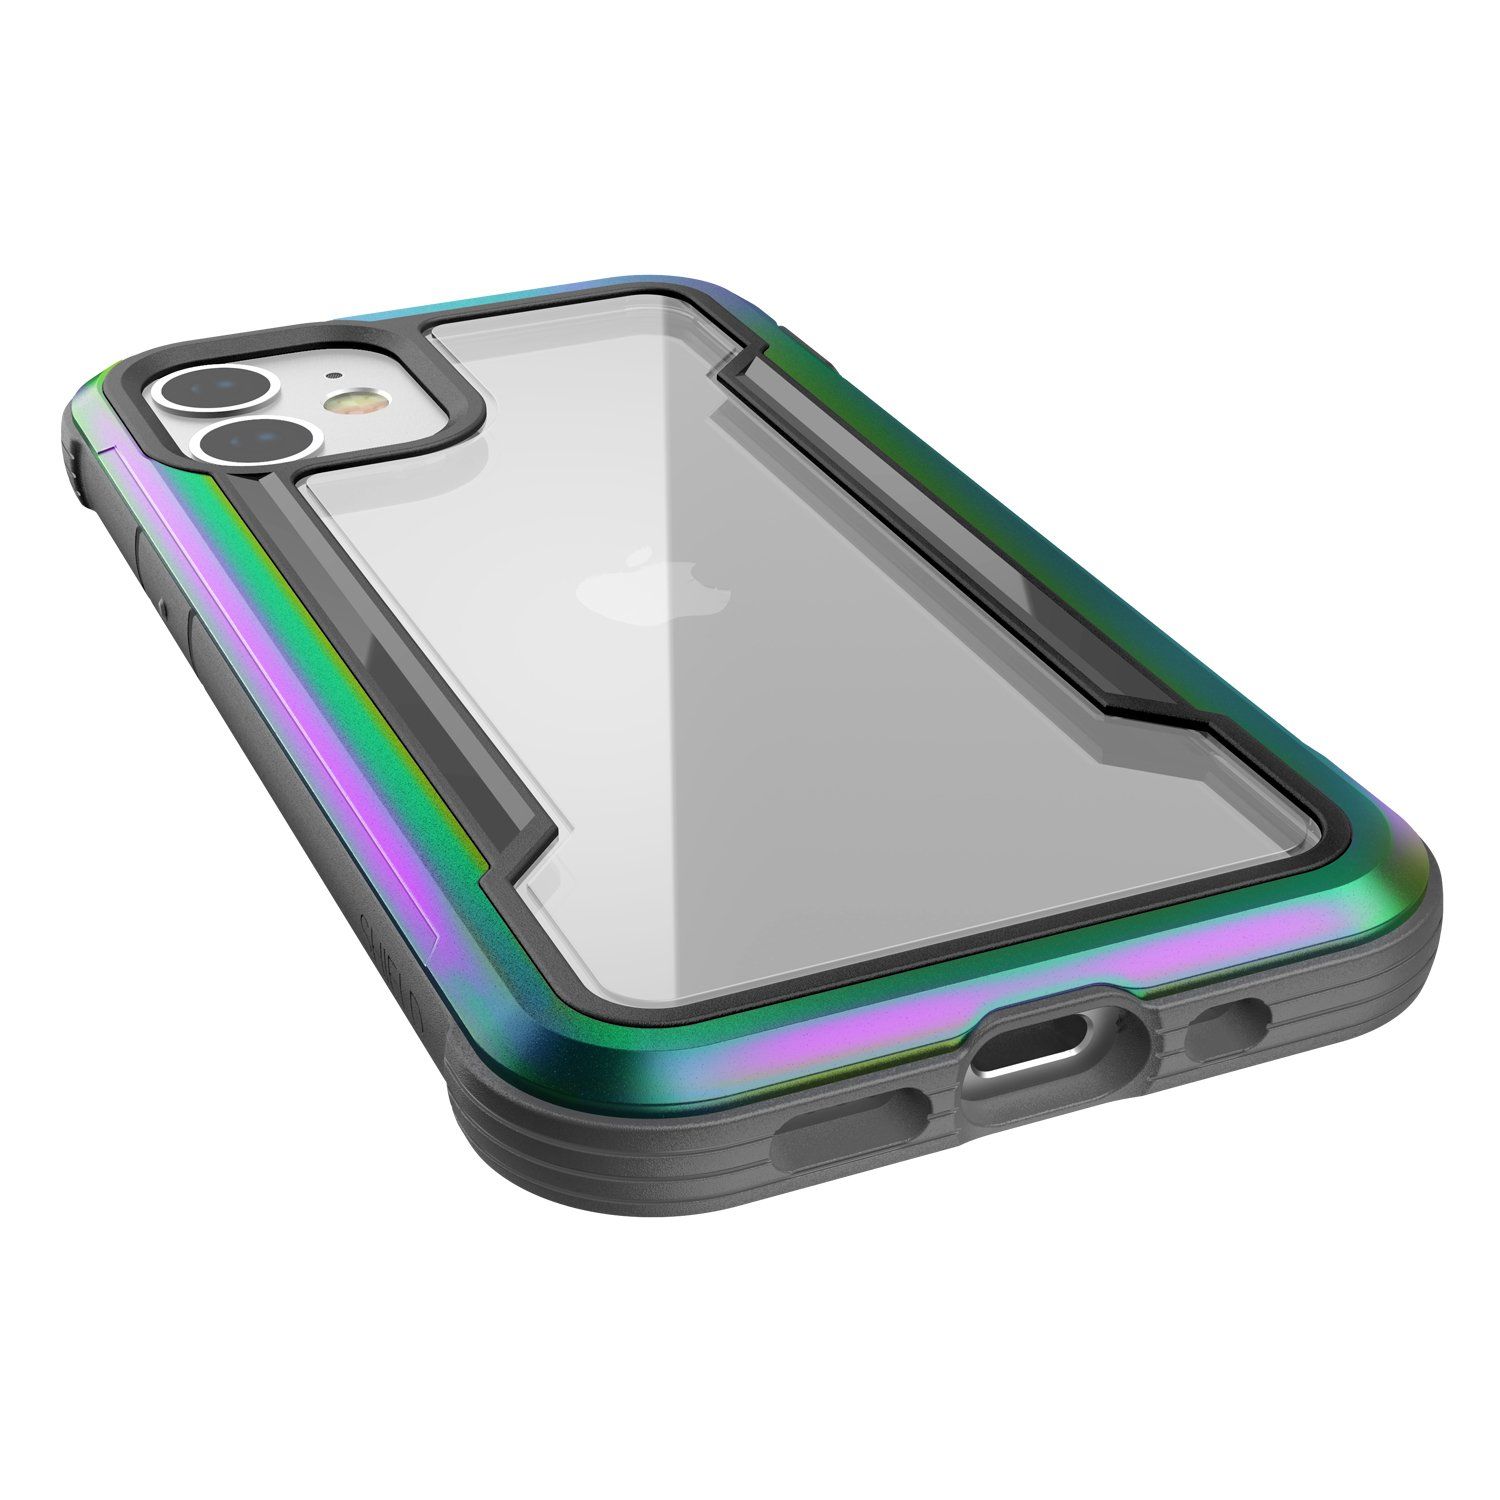 X-Doria Defense Raptic Shield Case for iPhone 12 mini 5.4"(2020)